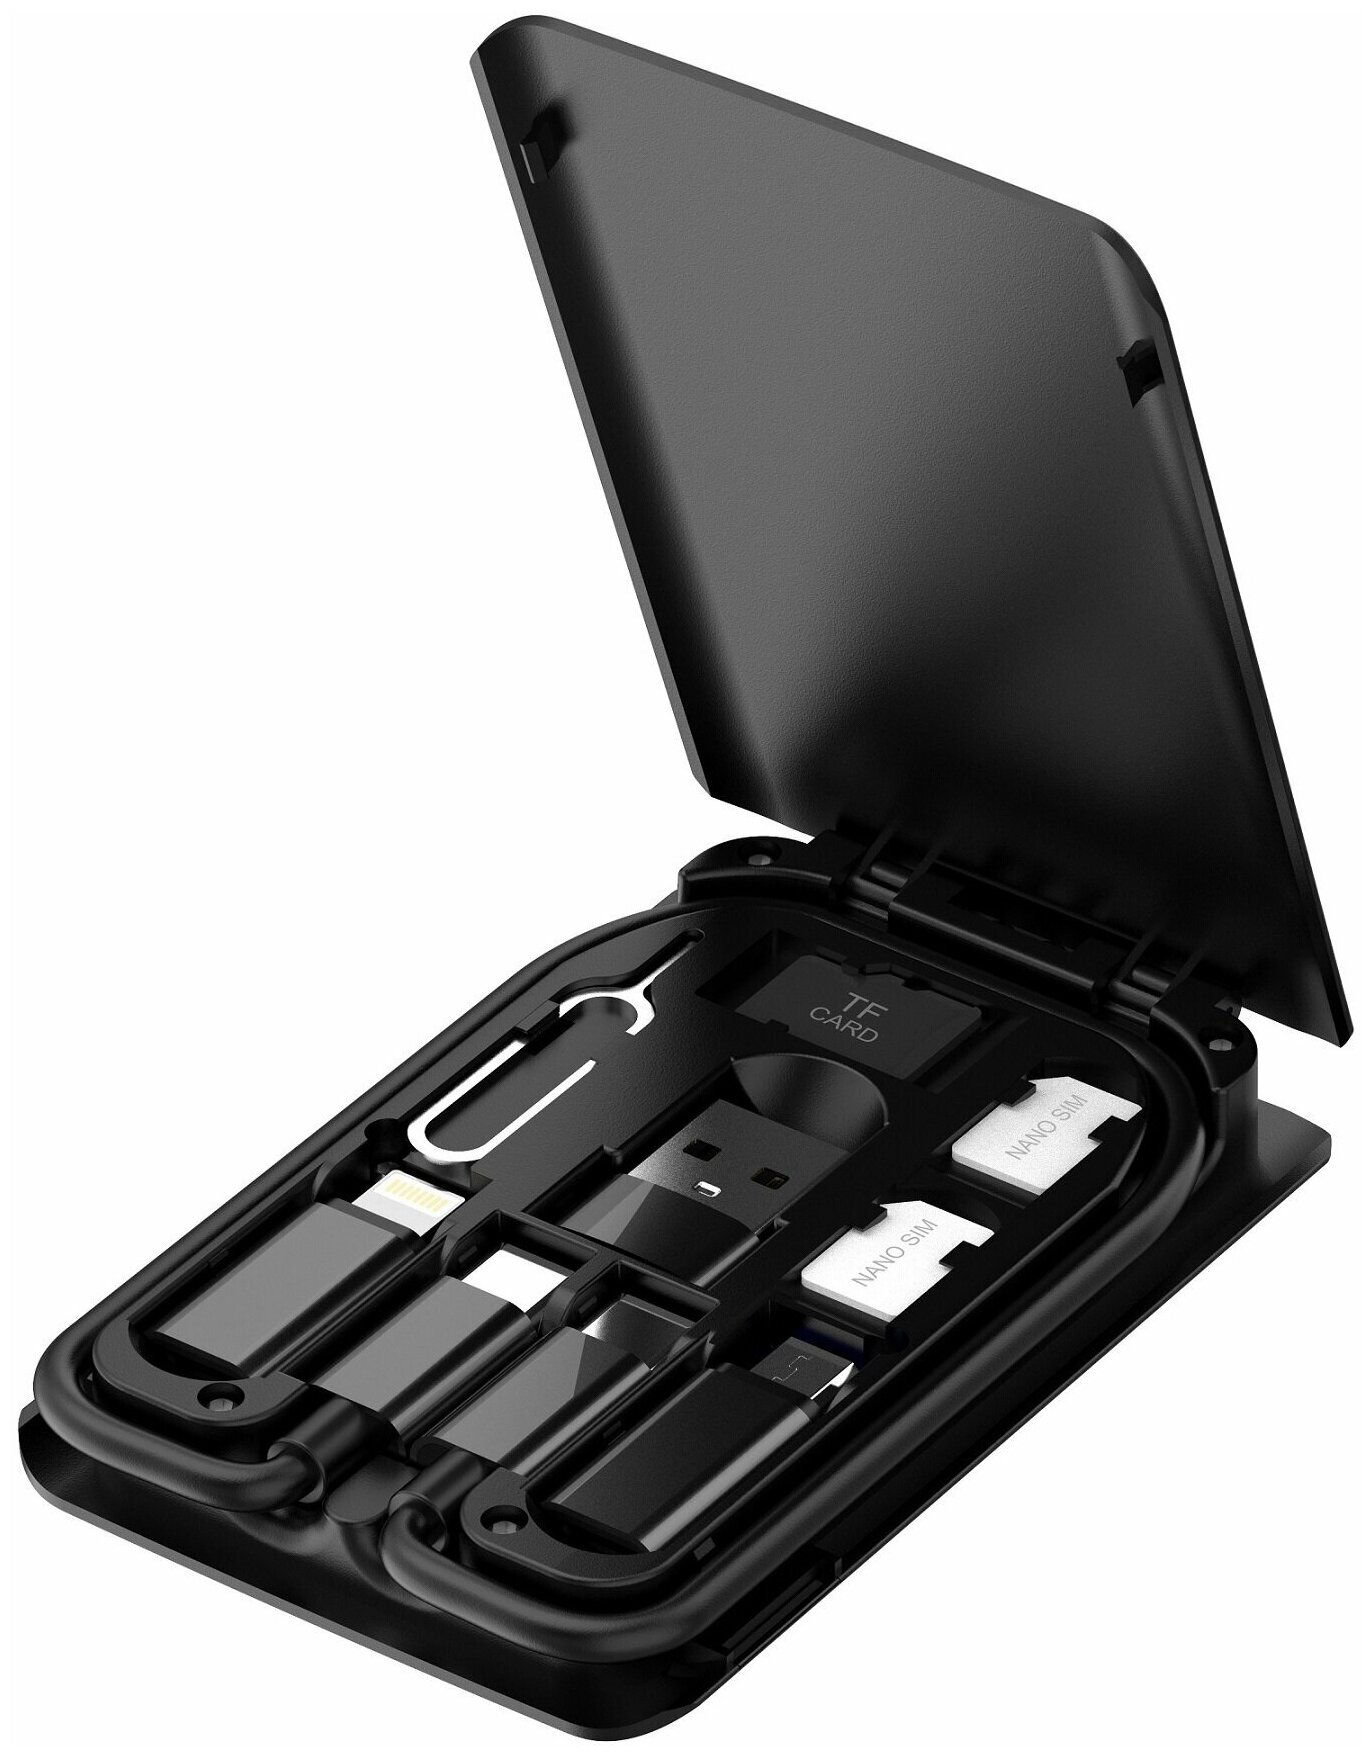 Набор переходников для мобильных устройств для ноутбука набор адаптеров USB Type-C для iPhone Lightning microUSB